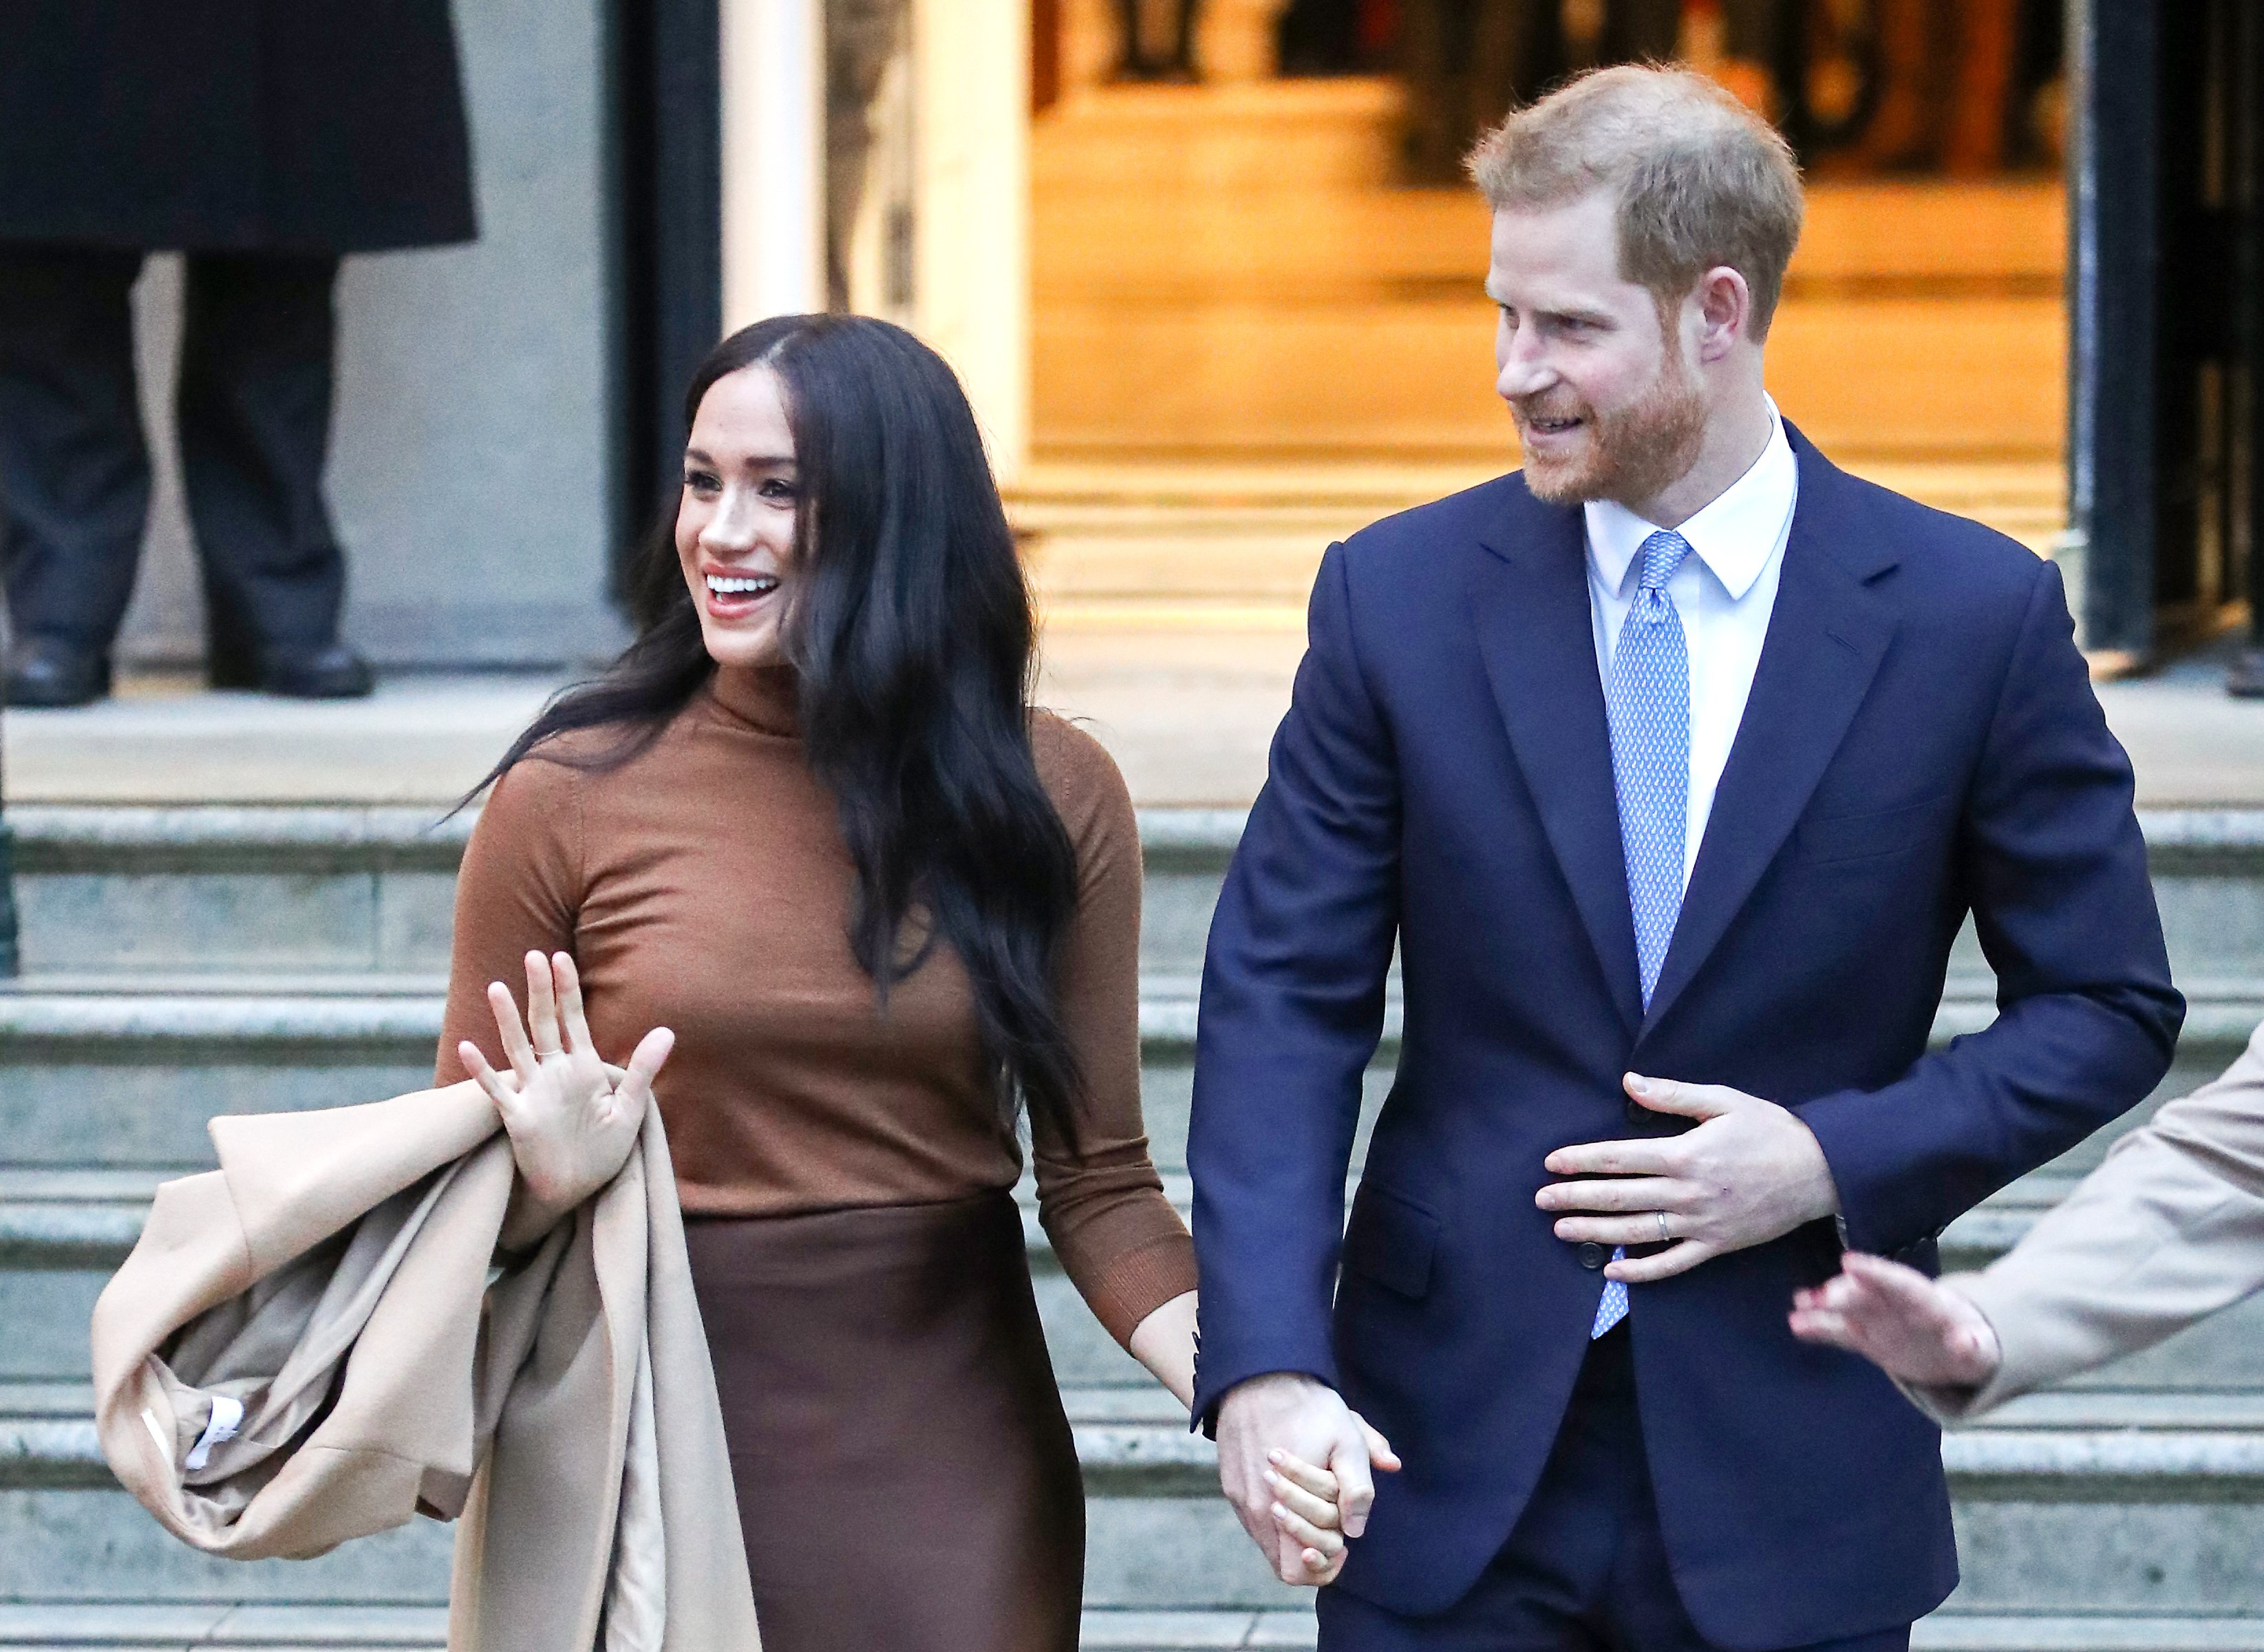 Le prince Harry et Meghan Markle quittent la Maison du Canada le 07 janvier 2020, à Londres, en Angleterre. | Source : Getty Images